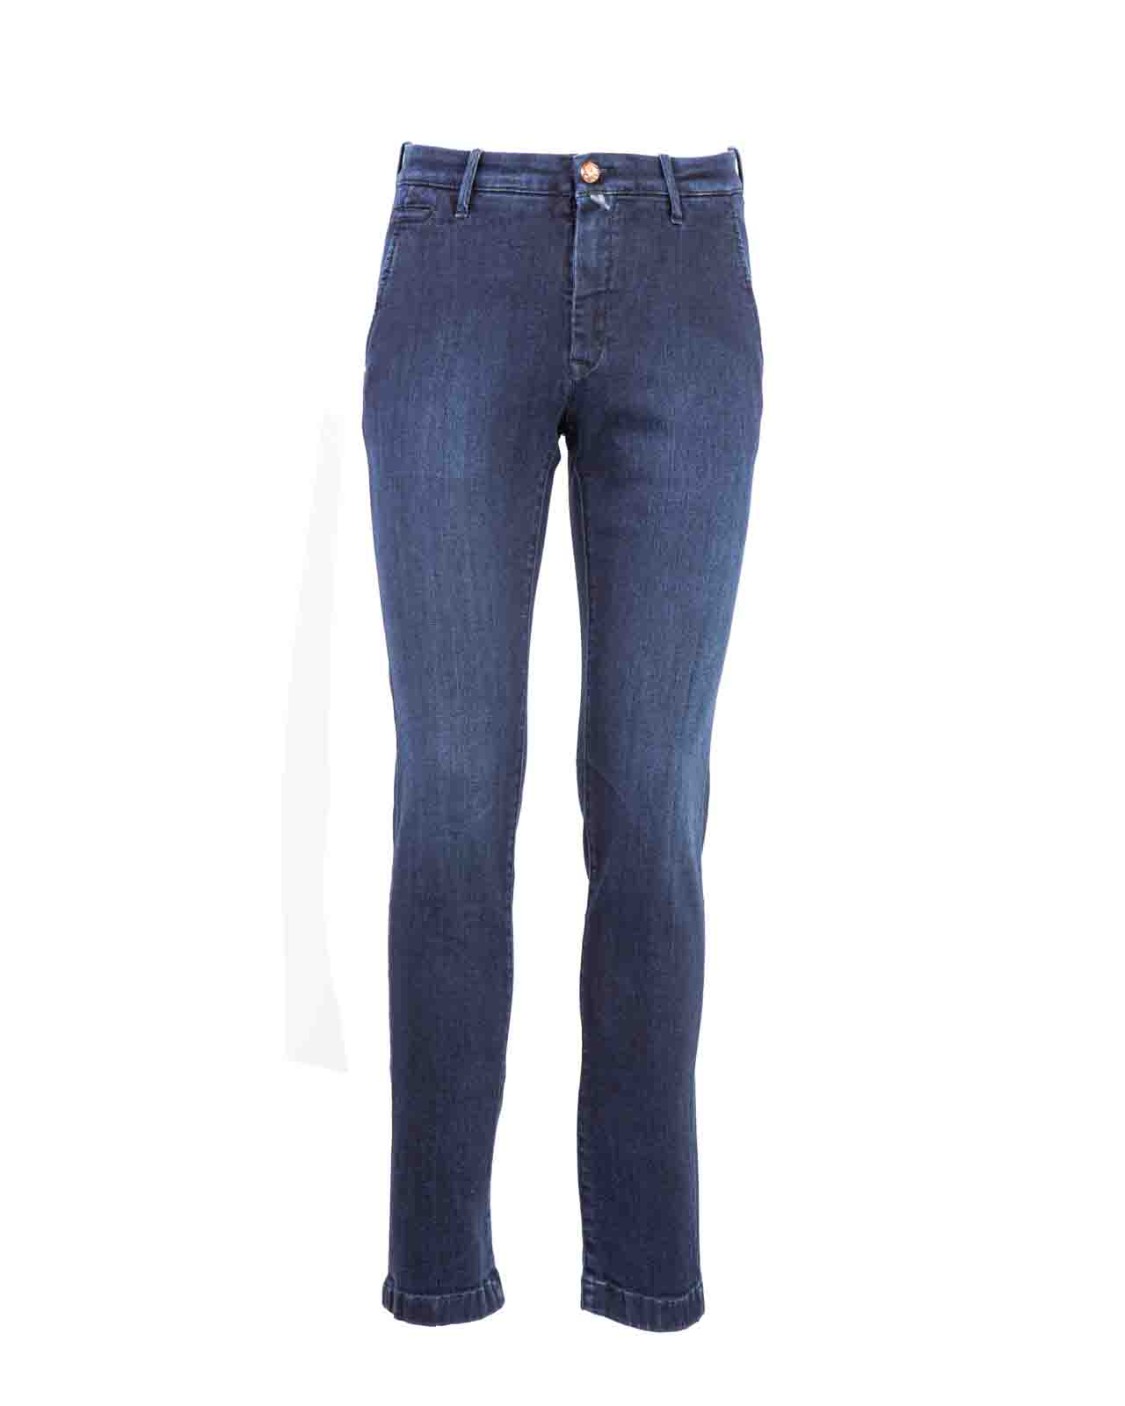 shop JACOB COHEN  Jeans: Jacob Cohen jeans "Bobby".
Tasche america.
Chiusura con bottone e zip.
Tasche posteriori a filo.
Composizione: 98% Cotone 2% Elastan.
Fabbricato in Italia.. UP001 01 P3621 BOBBY-559D number 8453876